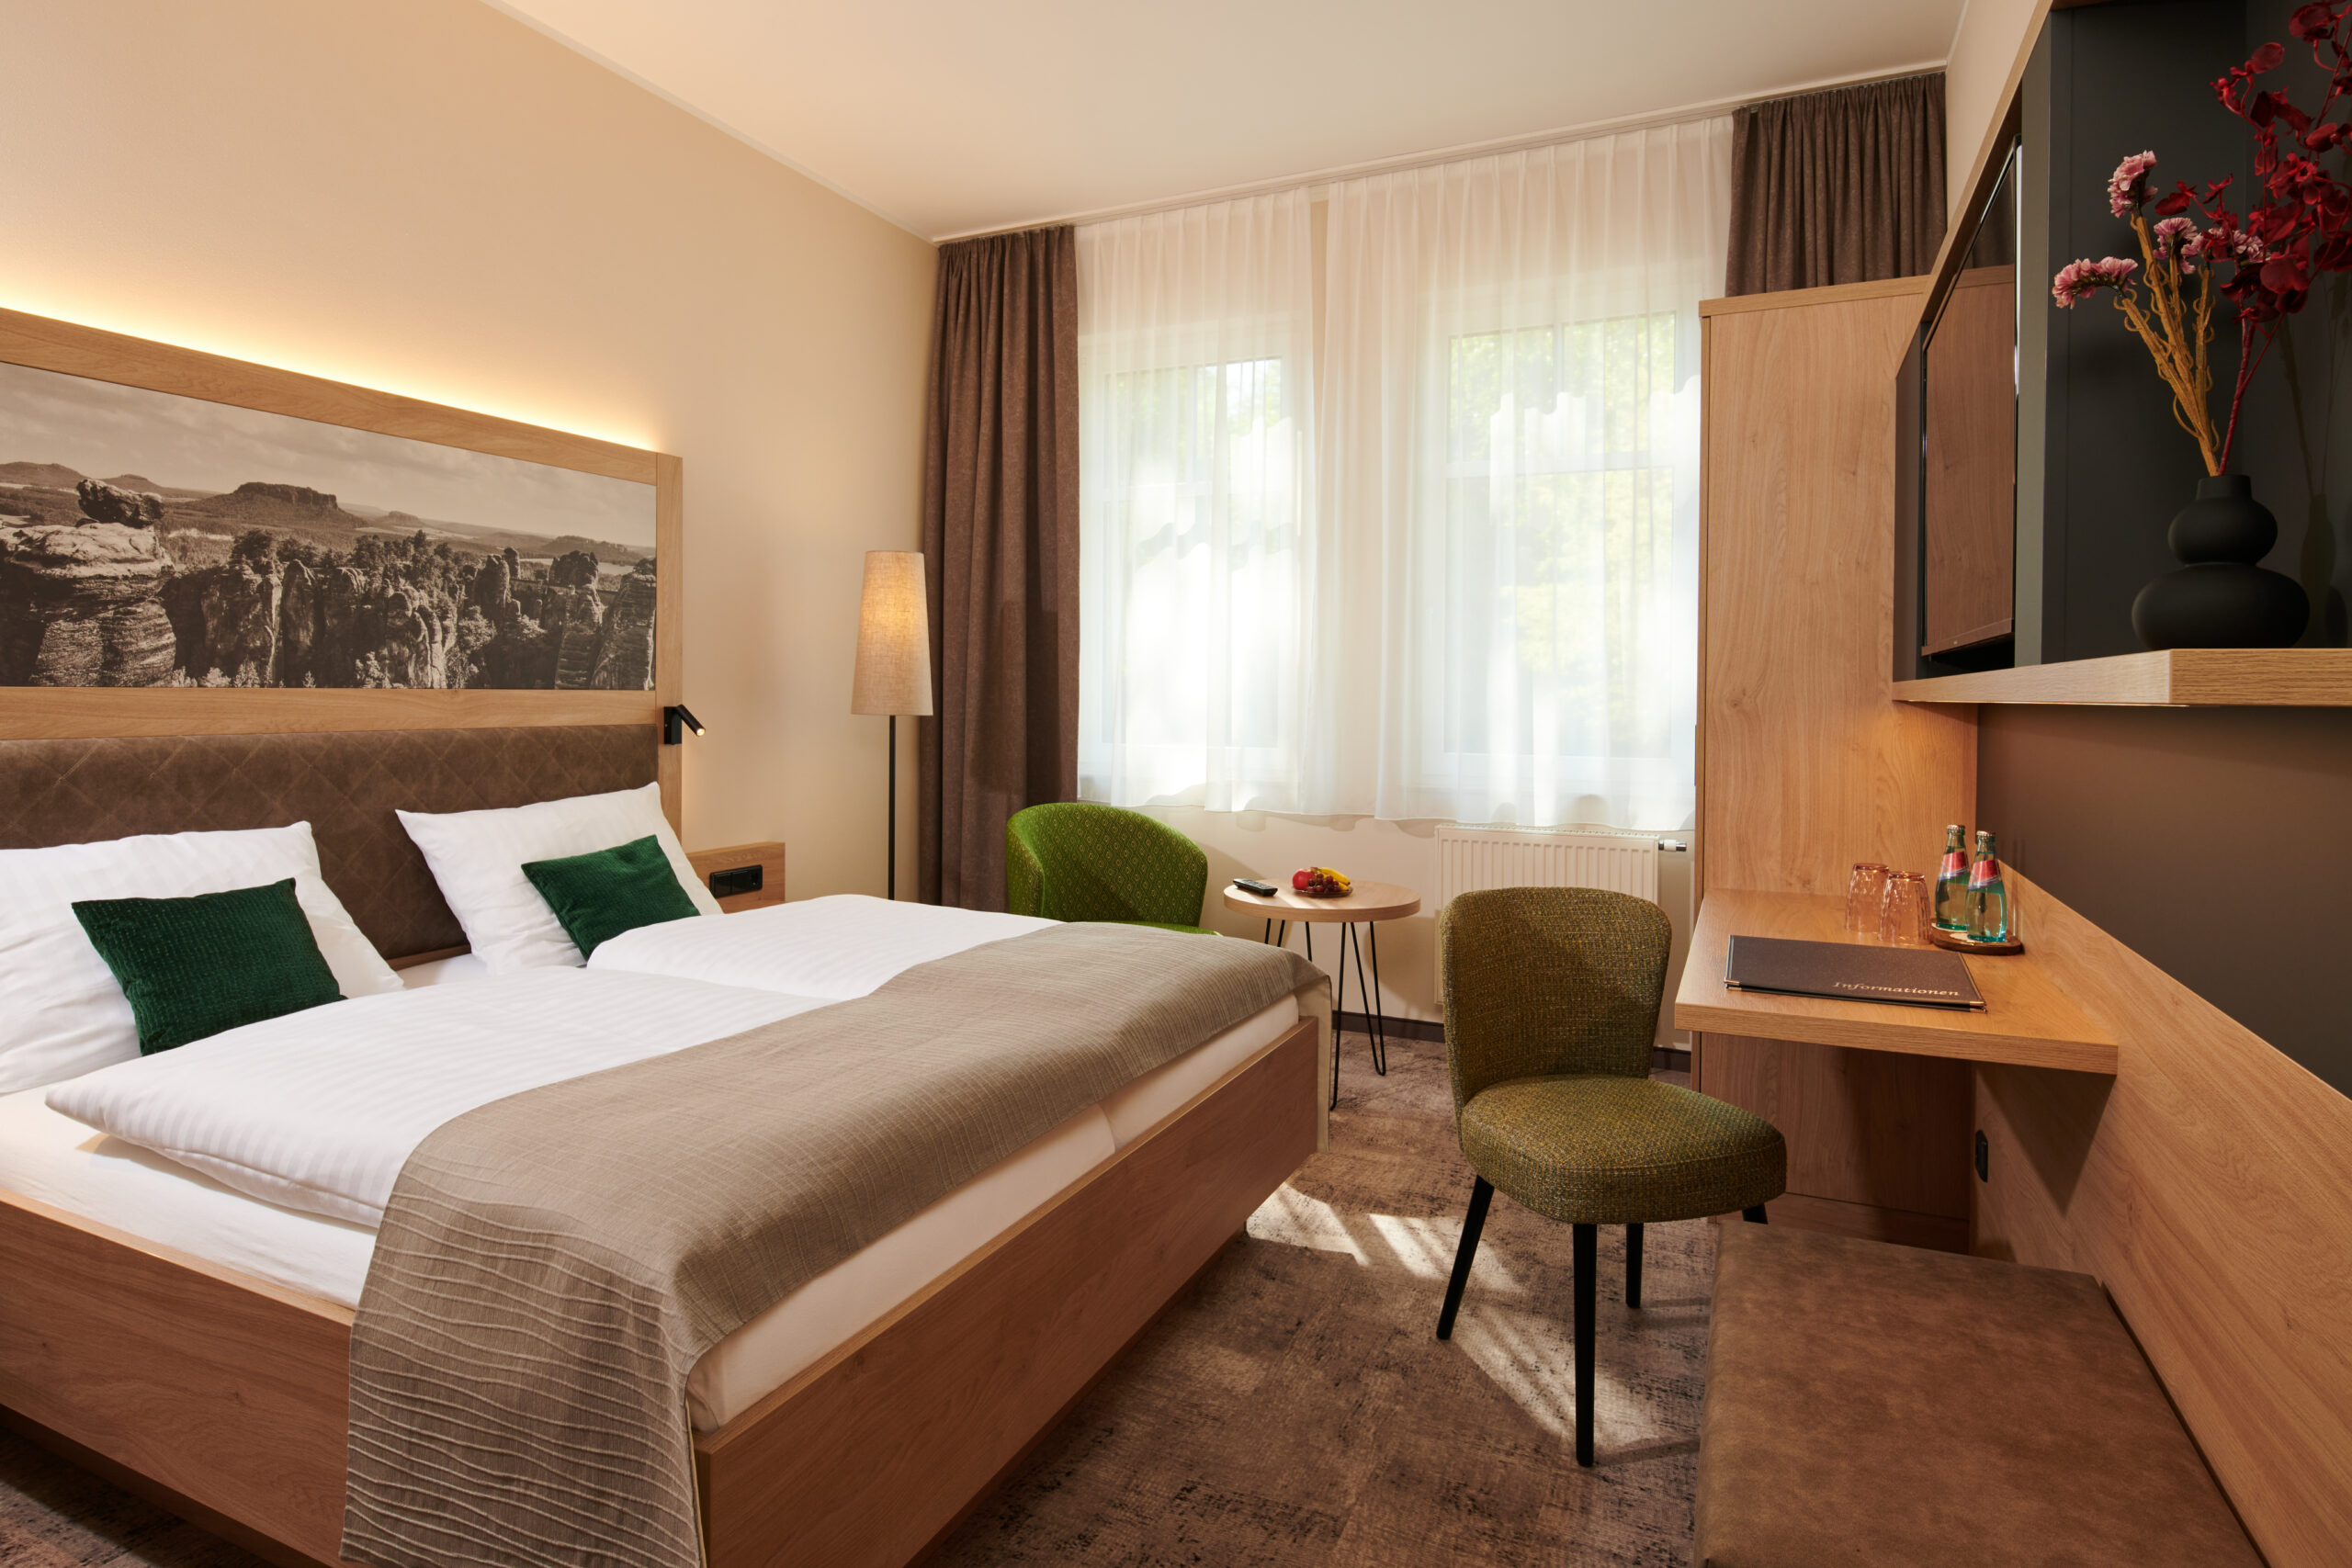 Elegantes Hotelzimmer im Parkhotel Neustadt, ausgestattet mit einem komfortablen Bett mit weißer Bettwäsche und grünen Akzentkissen, einer Sitzecke mit grünen Stühlen, einem Schreibtisch und einem flachen Fernseher auf einem Regal. Das Zimmer ist mit warmen Brauntönen und sanfter Beleuchtung gestaltet, was eine einladende Atmosphäre schafft.